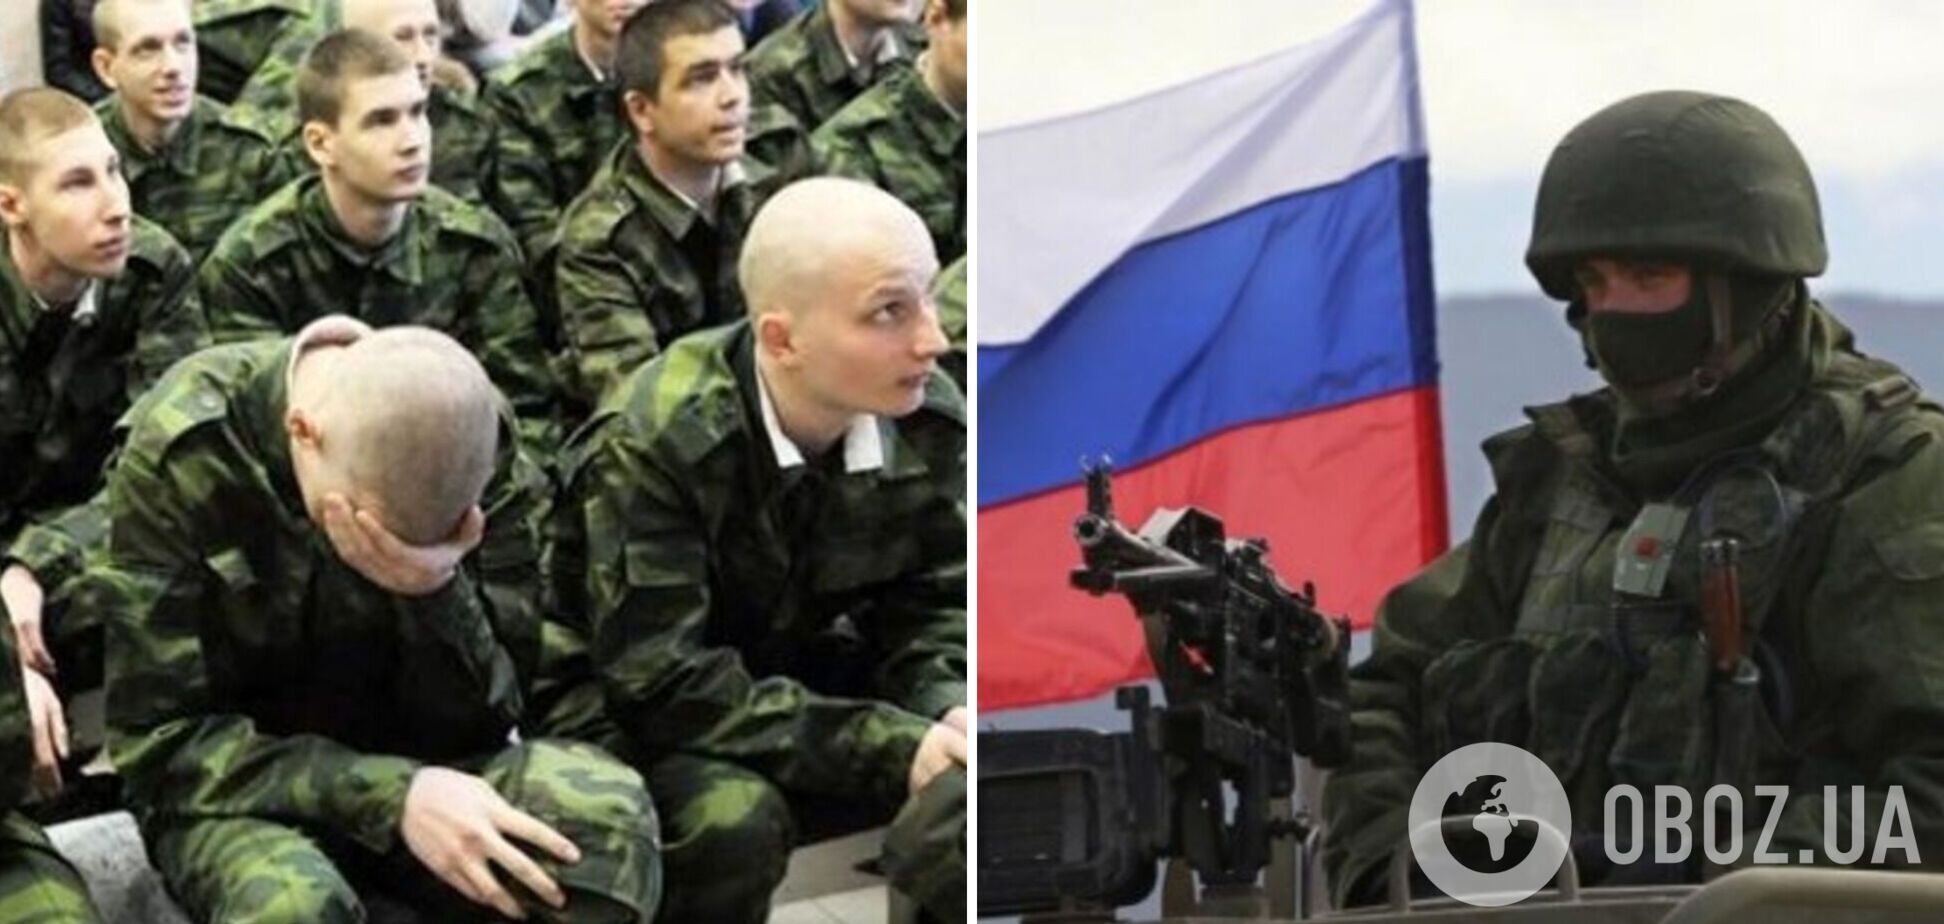 Російські окупанти шукають українські патрони, щоб прострелити собі ноги та потрапити до шпиталю. Аудіо розмови